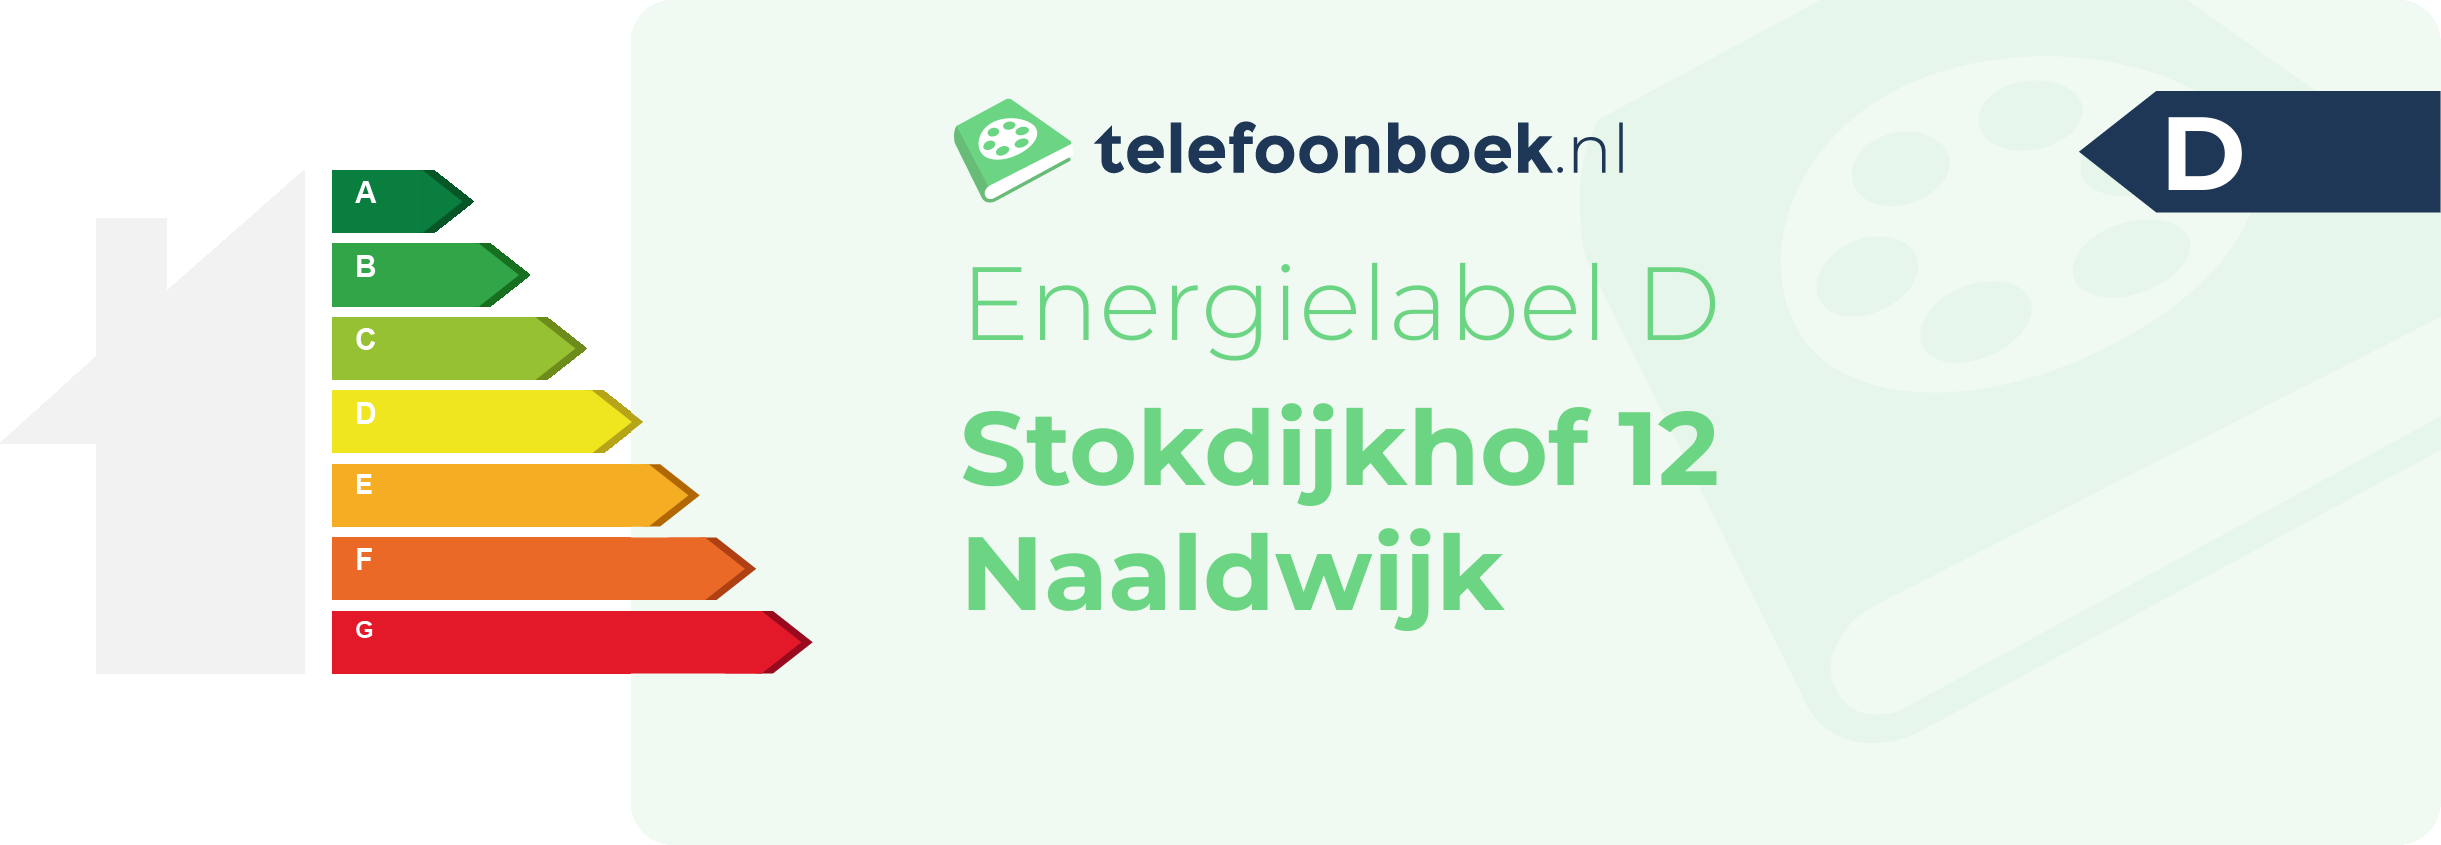 Energielabel Stokdijkhof 12 Naaldwijk